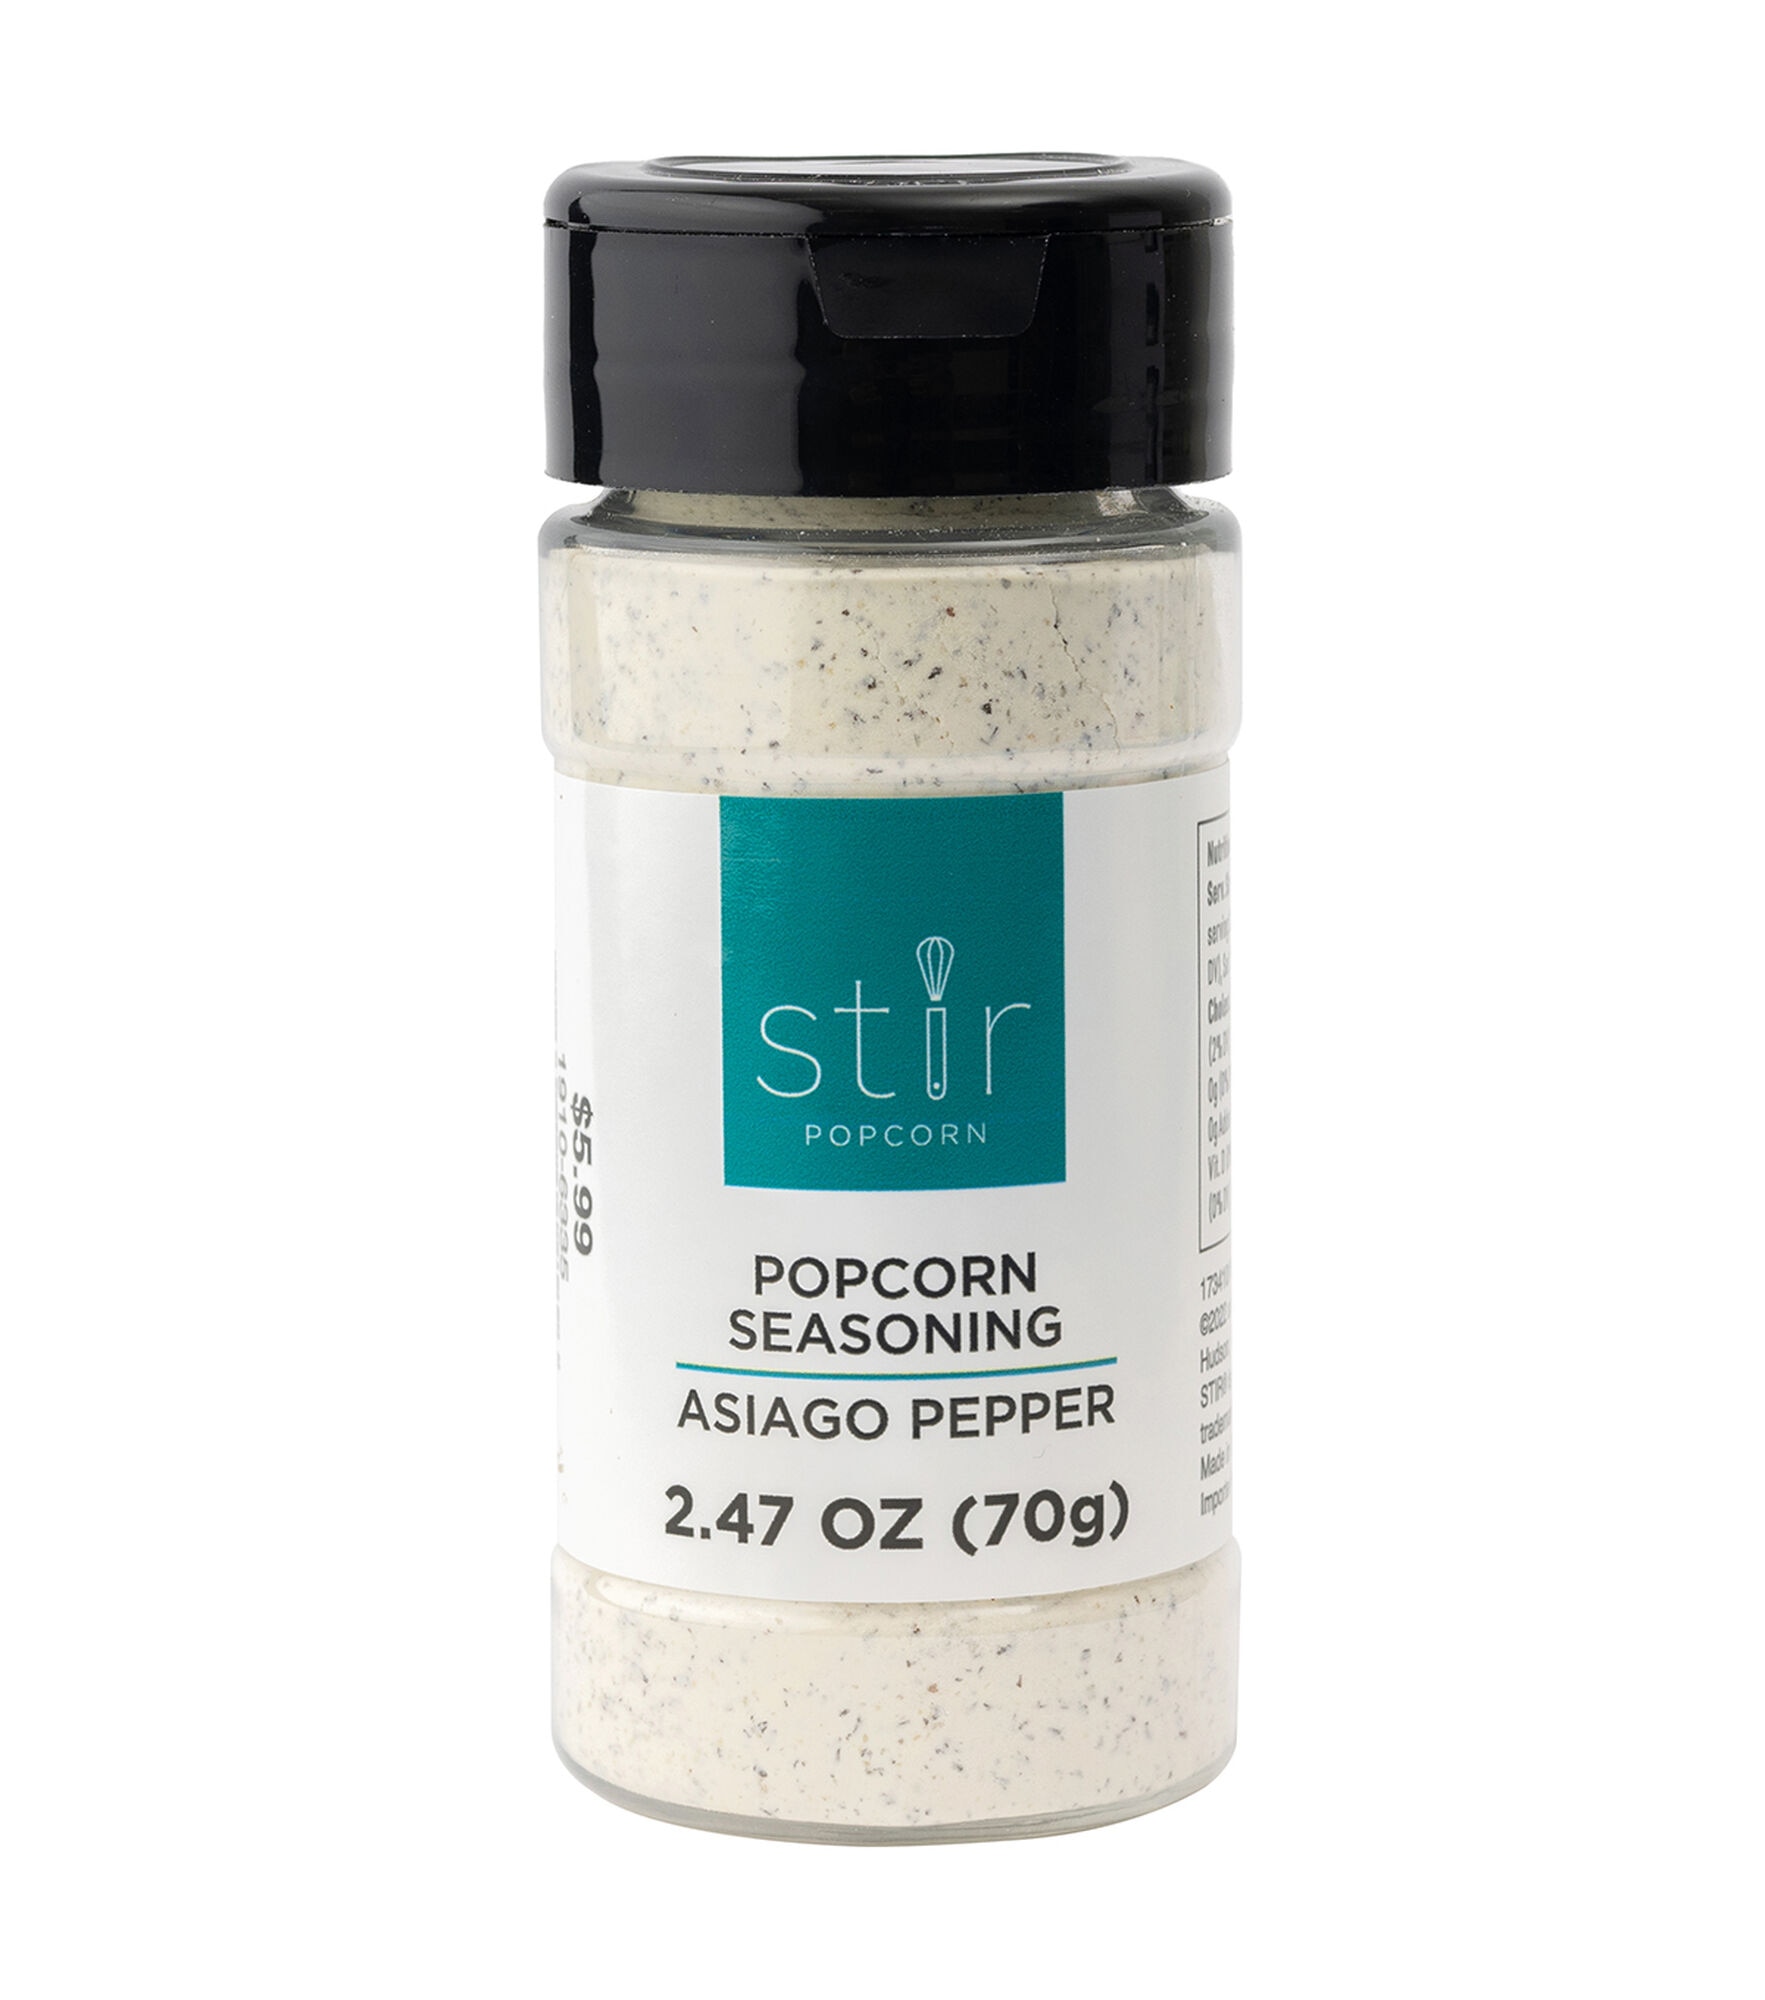 3oz Popcorn Seasonings by STIR, Asiago Pepper, hi-res